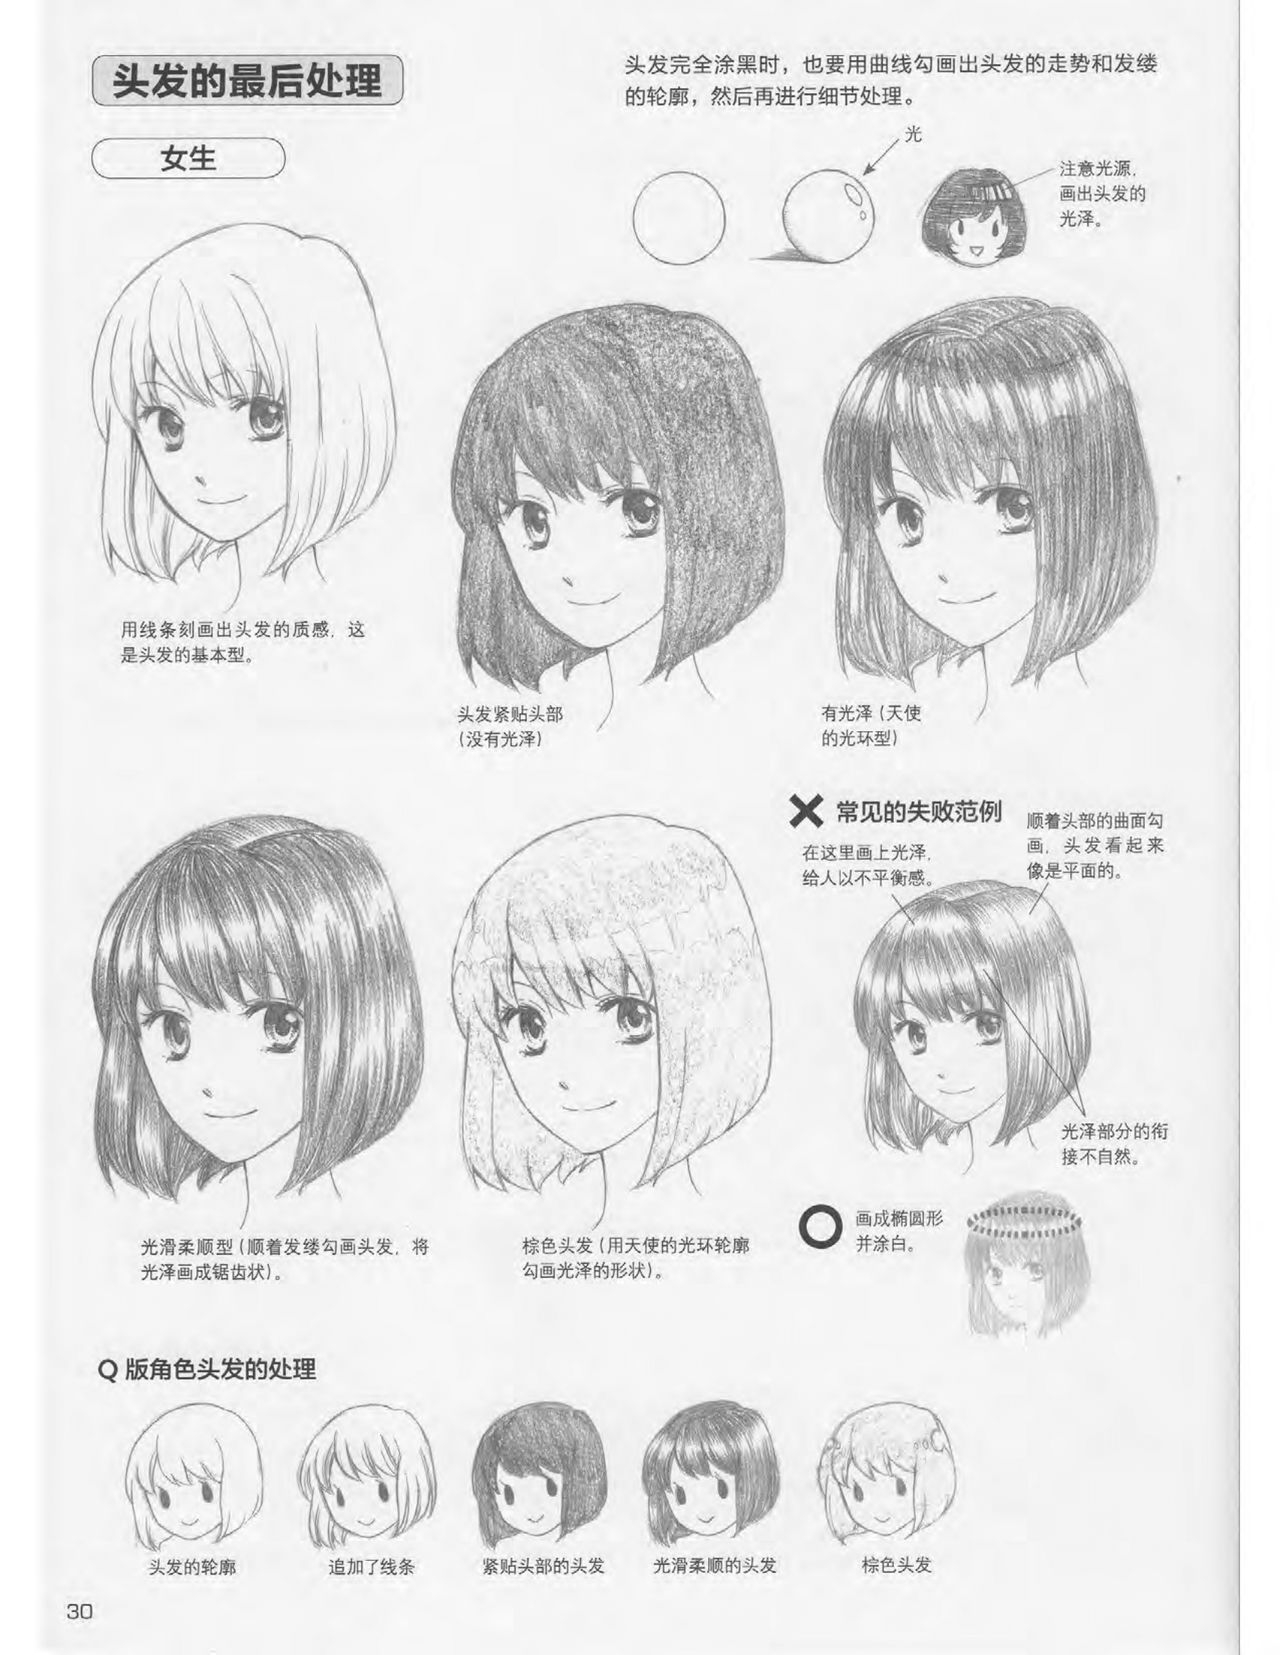 Japanese Manga Master Lecture 3: Lin Akira and Kakumaru Maru Talk About Glamorous Character Modeling 30